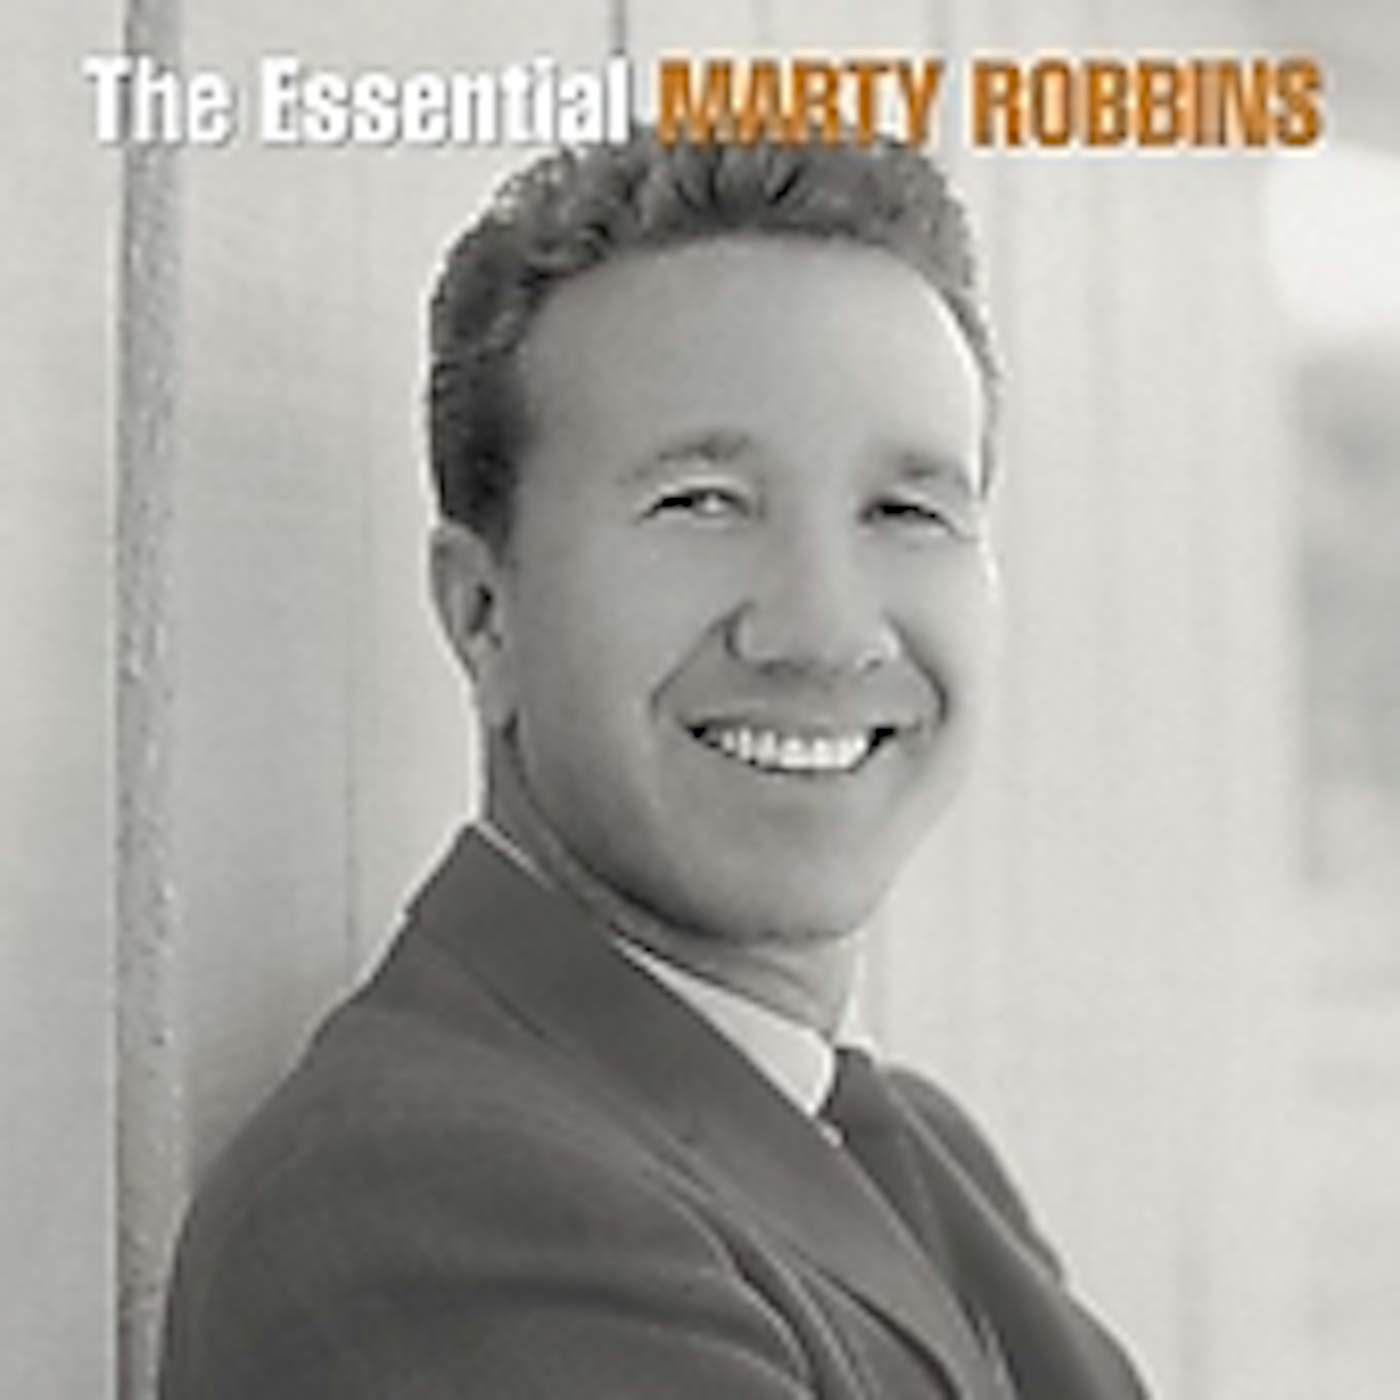 ESSENTIAL MARTY ROBBINS CD